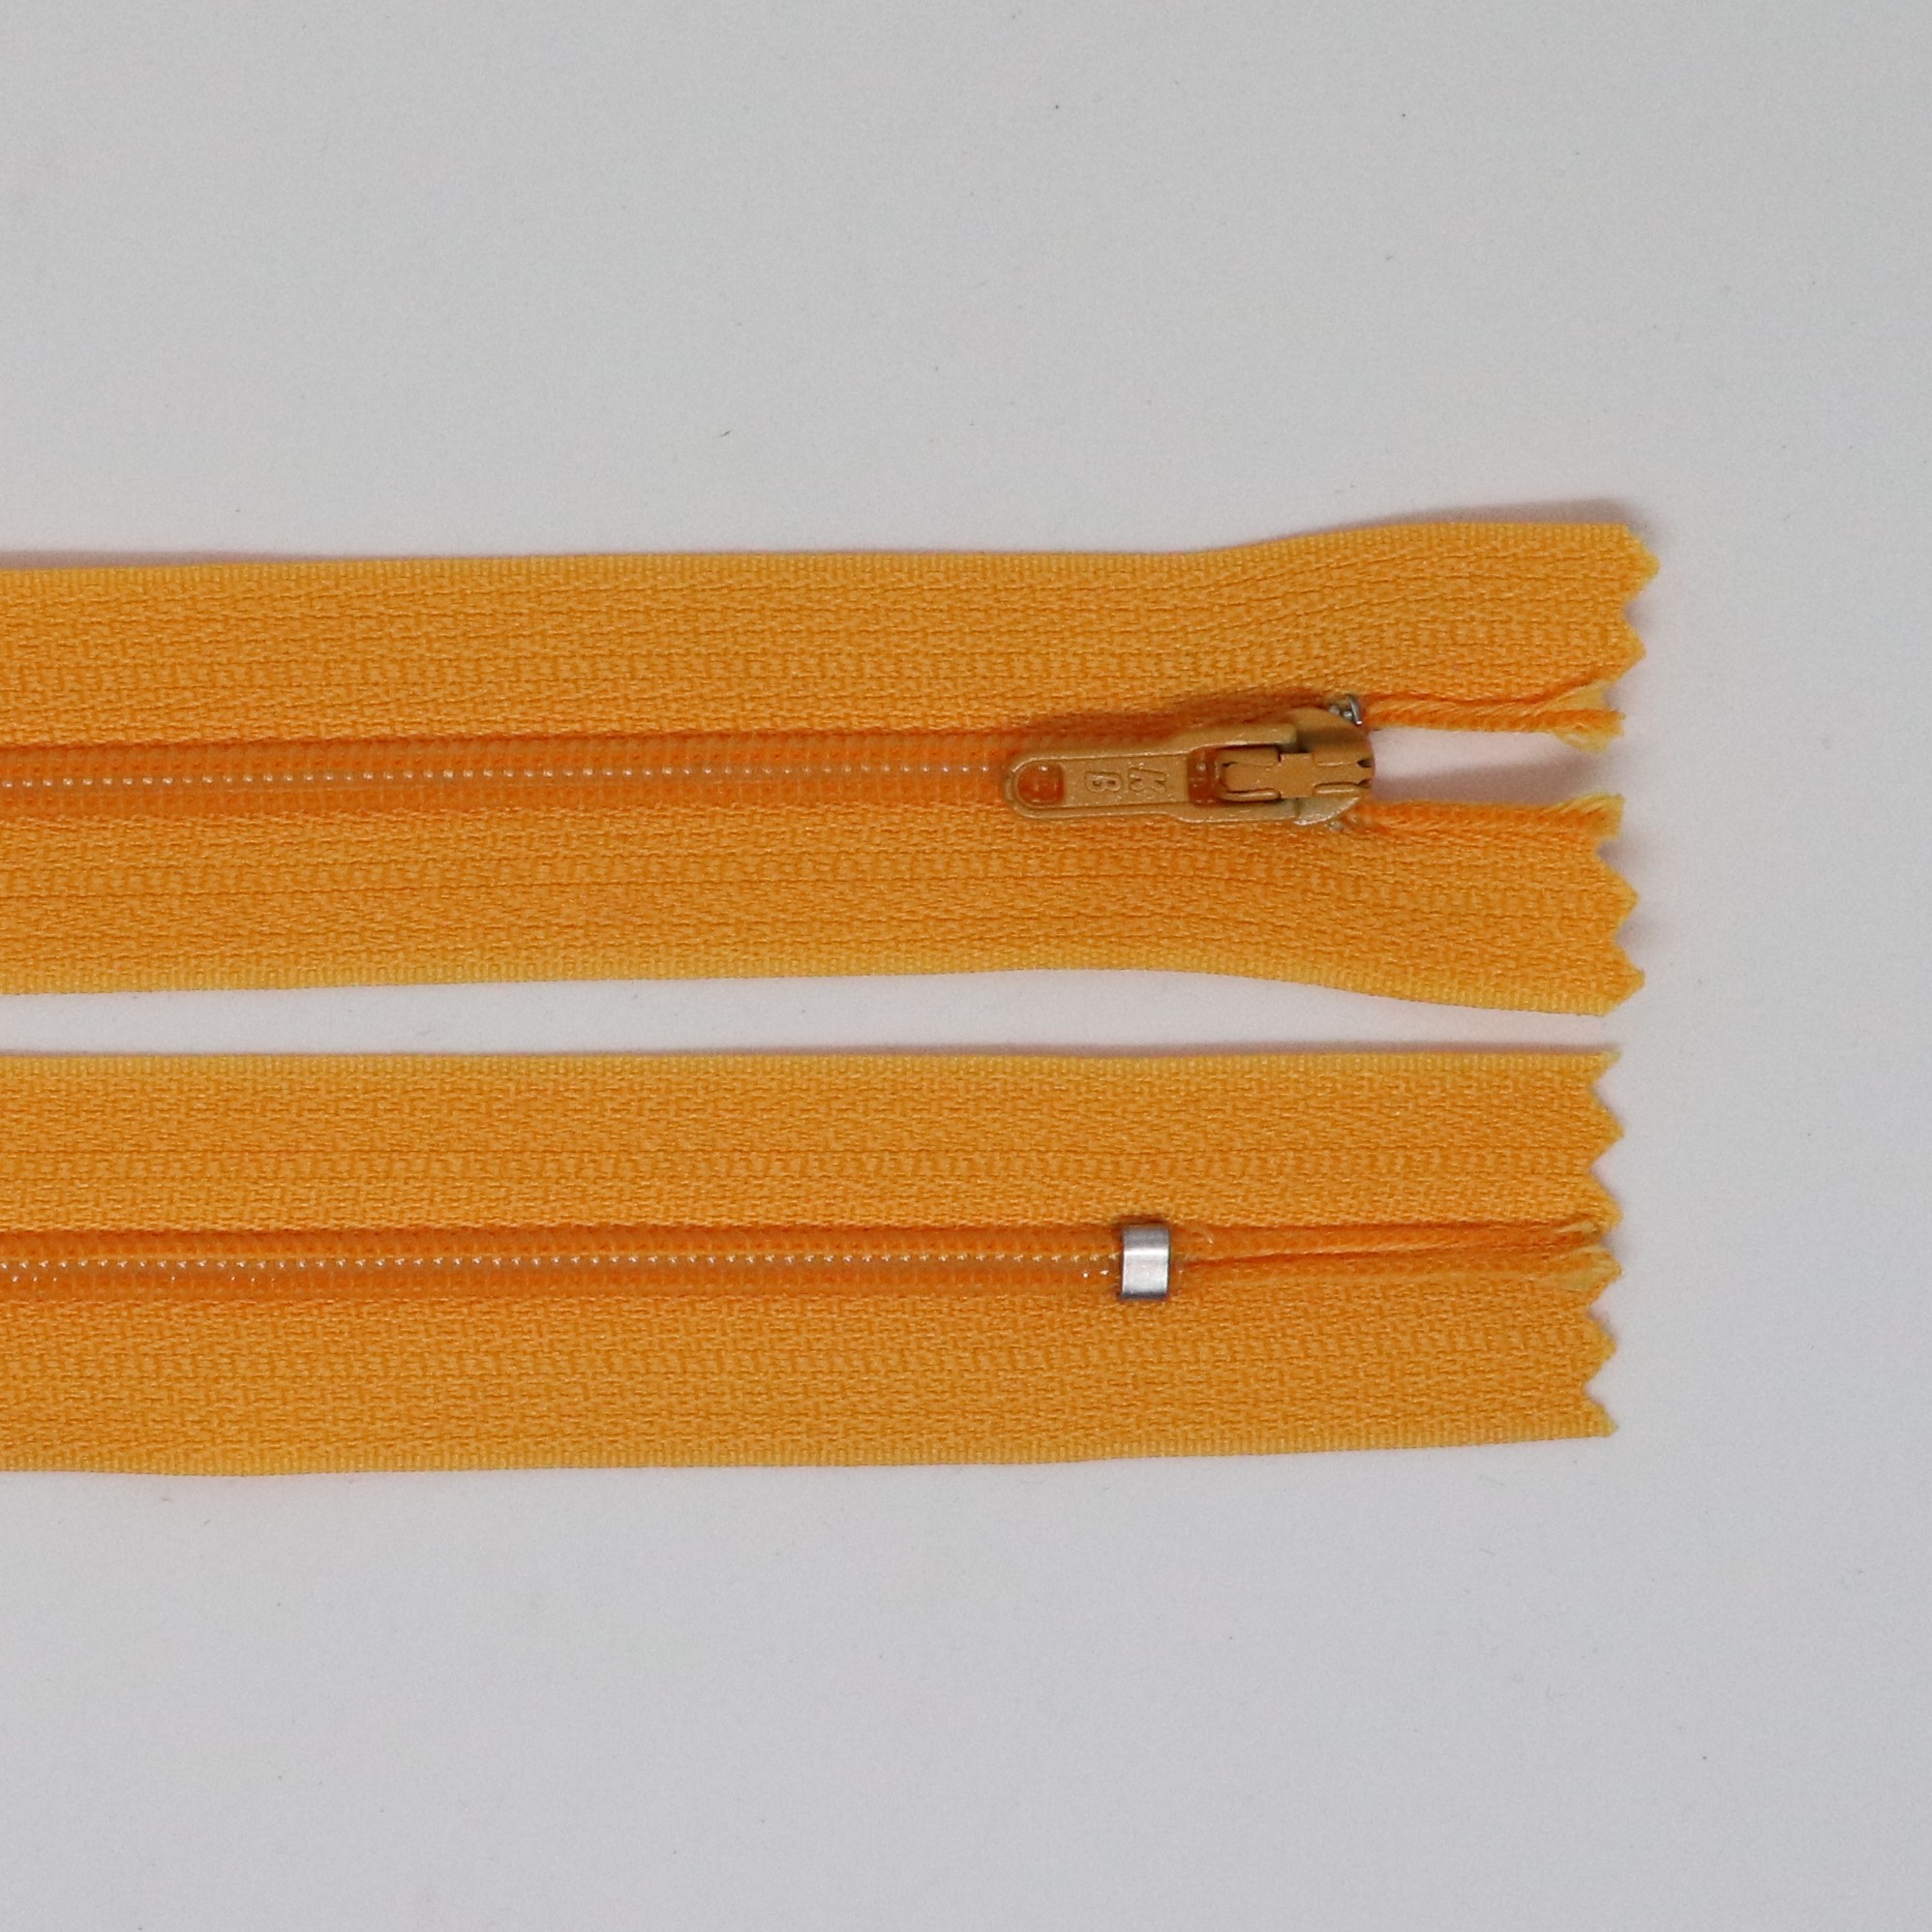 Spirálový zip, šíøe 3 mm, délka 40 cm, oranžová - zvìtšit obrázek